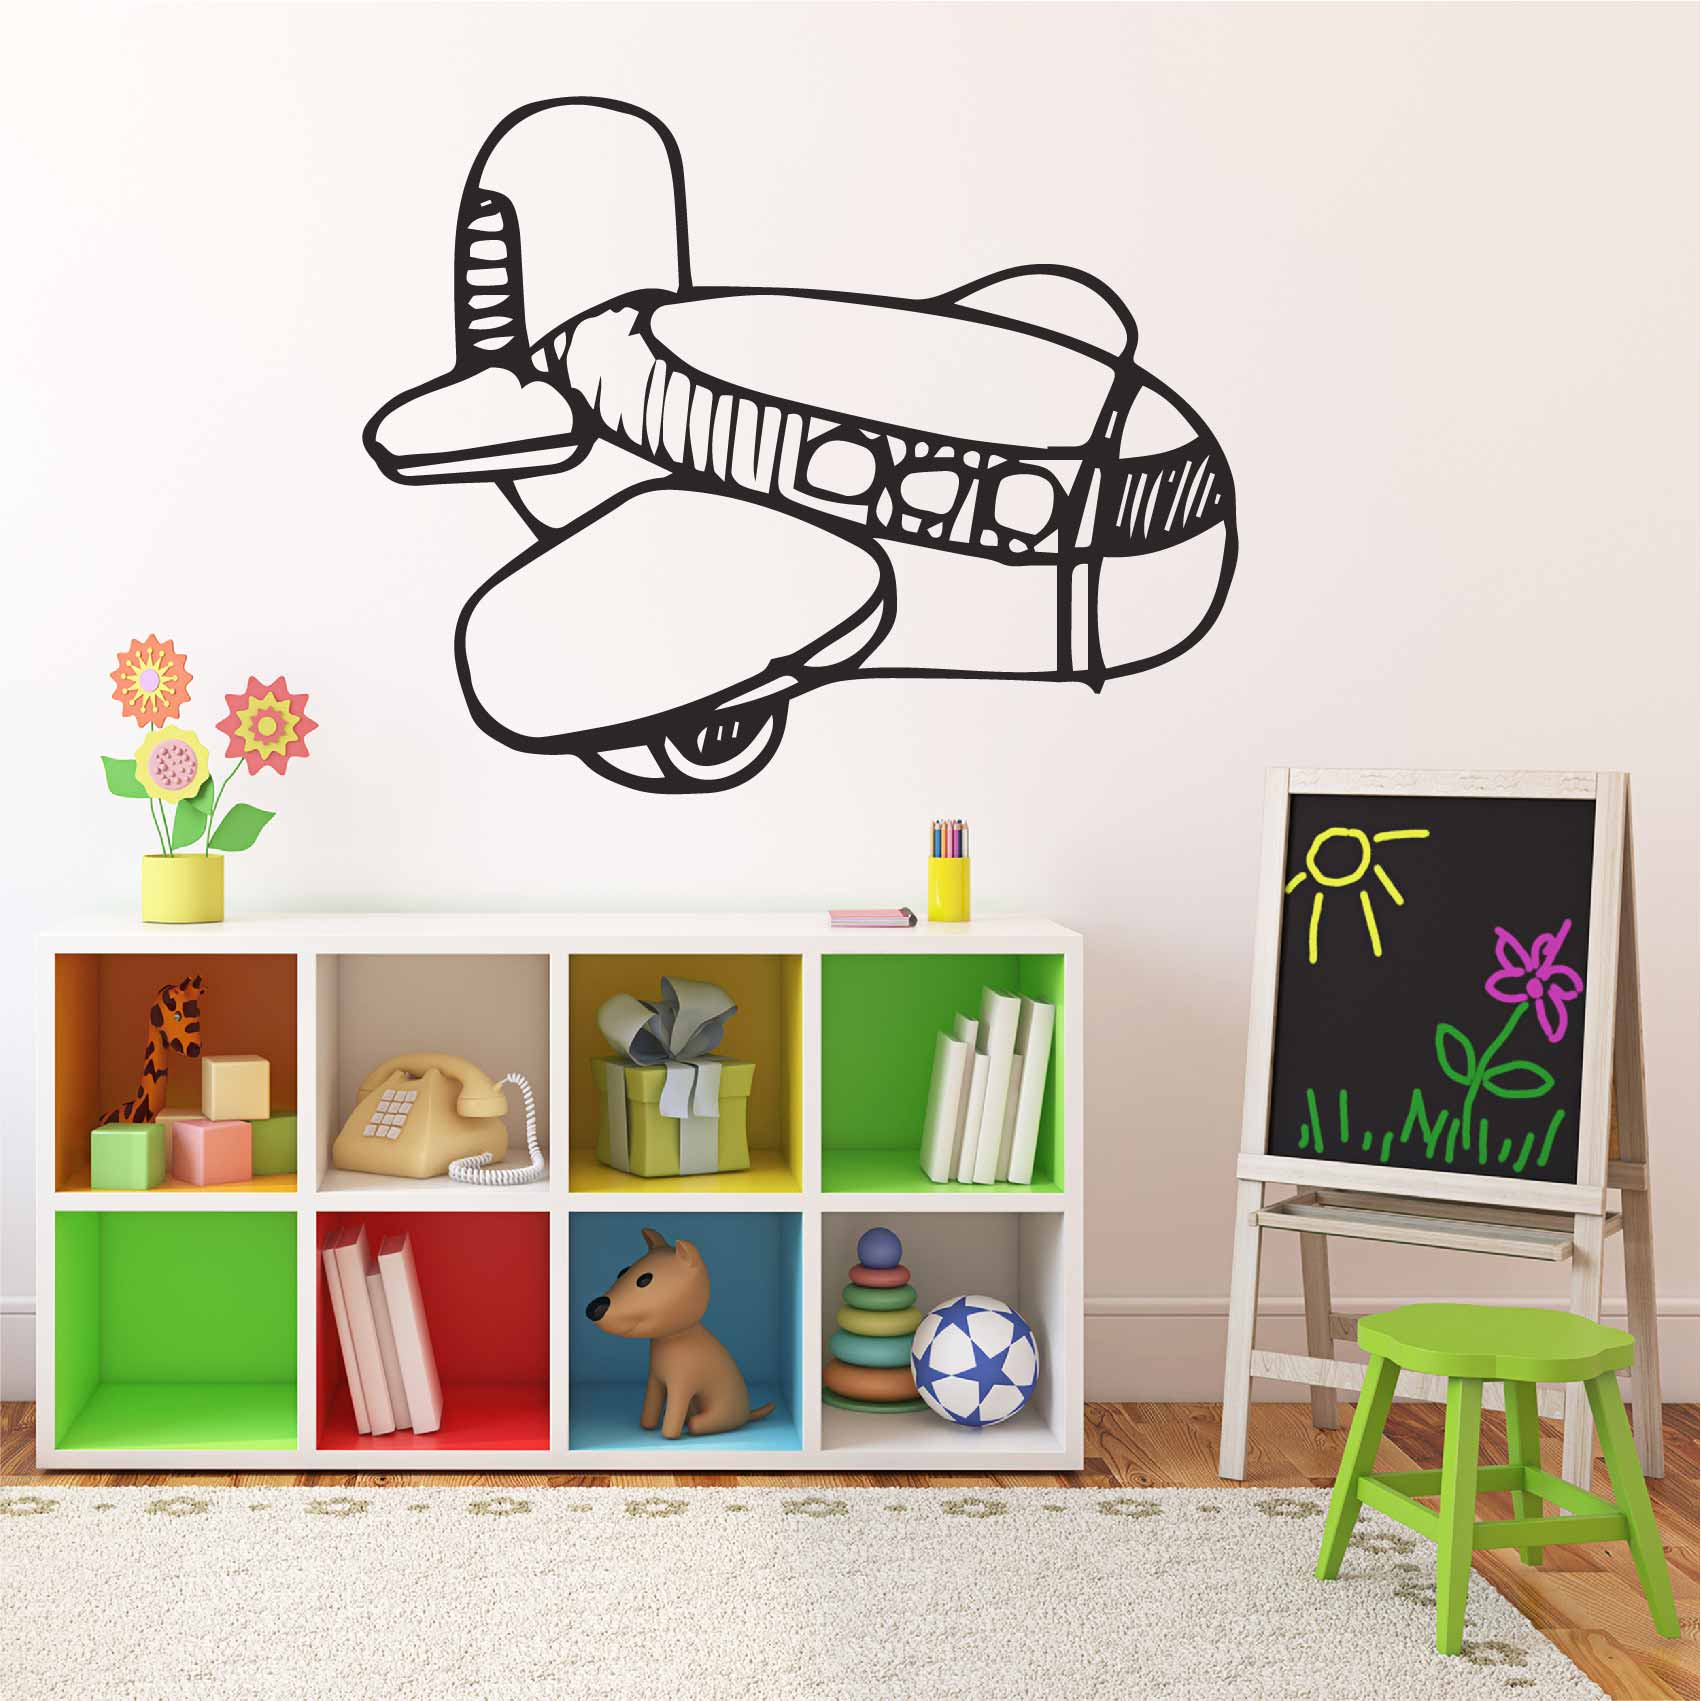 stickers-avion-bébé-ref21bebe-stickers-muraux-bébé-autocollant-mural-bébé-sticker-chambre-enfant-garcon-decoration-deco